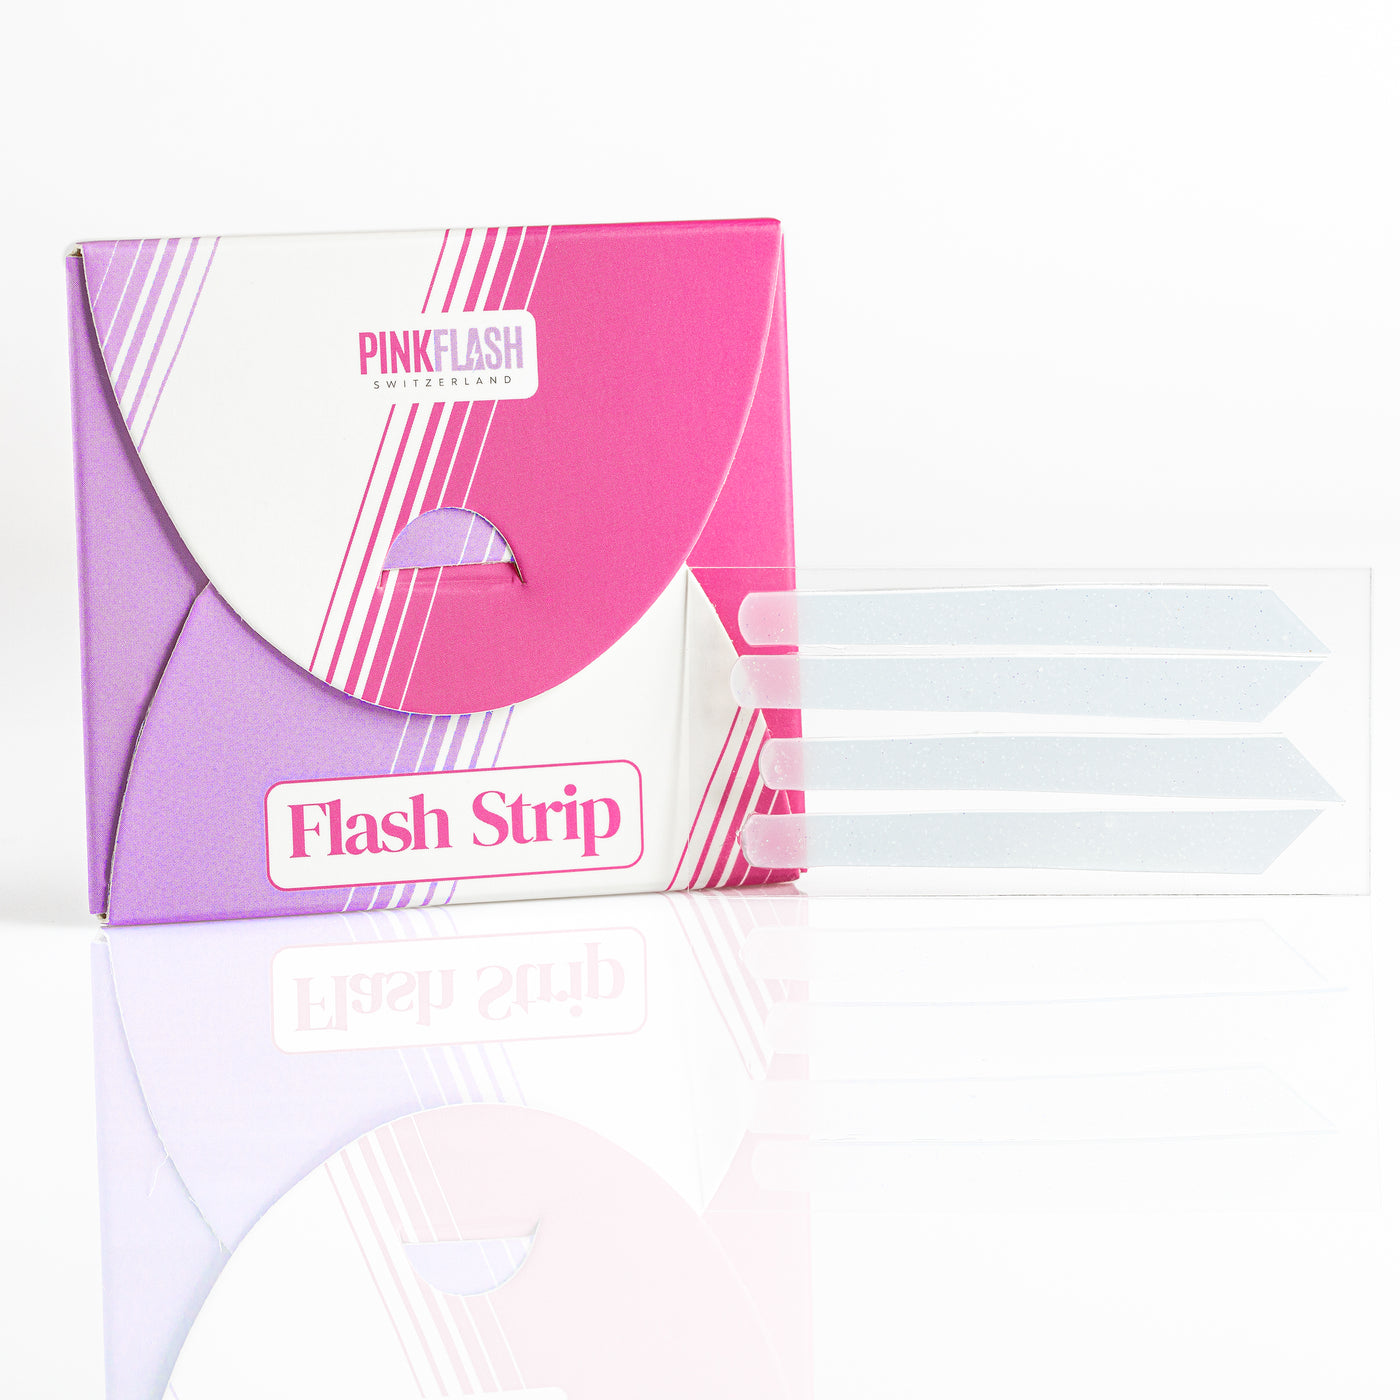 Pink Flash Switzerland Lash & Brow Lifting Kit